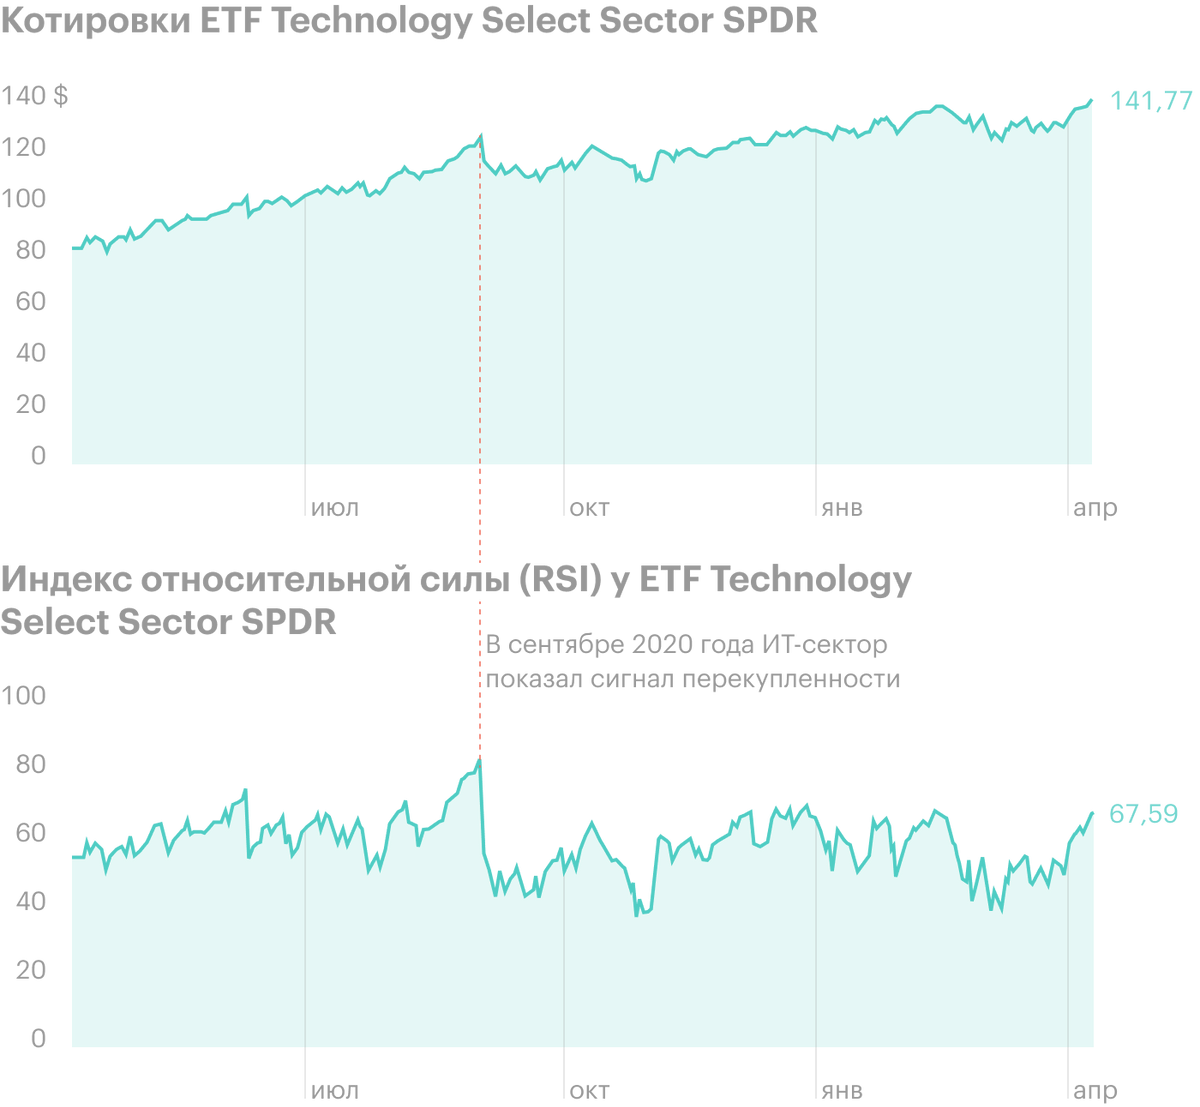 Ситуацию технической перепроданности или перекупленности в секторе можно использовать для&nbsp;ротации: в сентябре 2020&nbsp;года ИТ-сектор, в данном случае ETF Technology Select Sector SPDR (XLK), показал сигнал перекупленности. Его индекс относительной силы (RSI) резко вырос — выше значения 75. В течение следующих месяцев ETF распродали, и он снизился на 12,9%. Источник: nasdaq.com